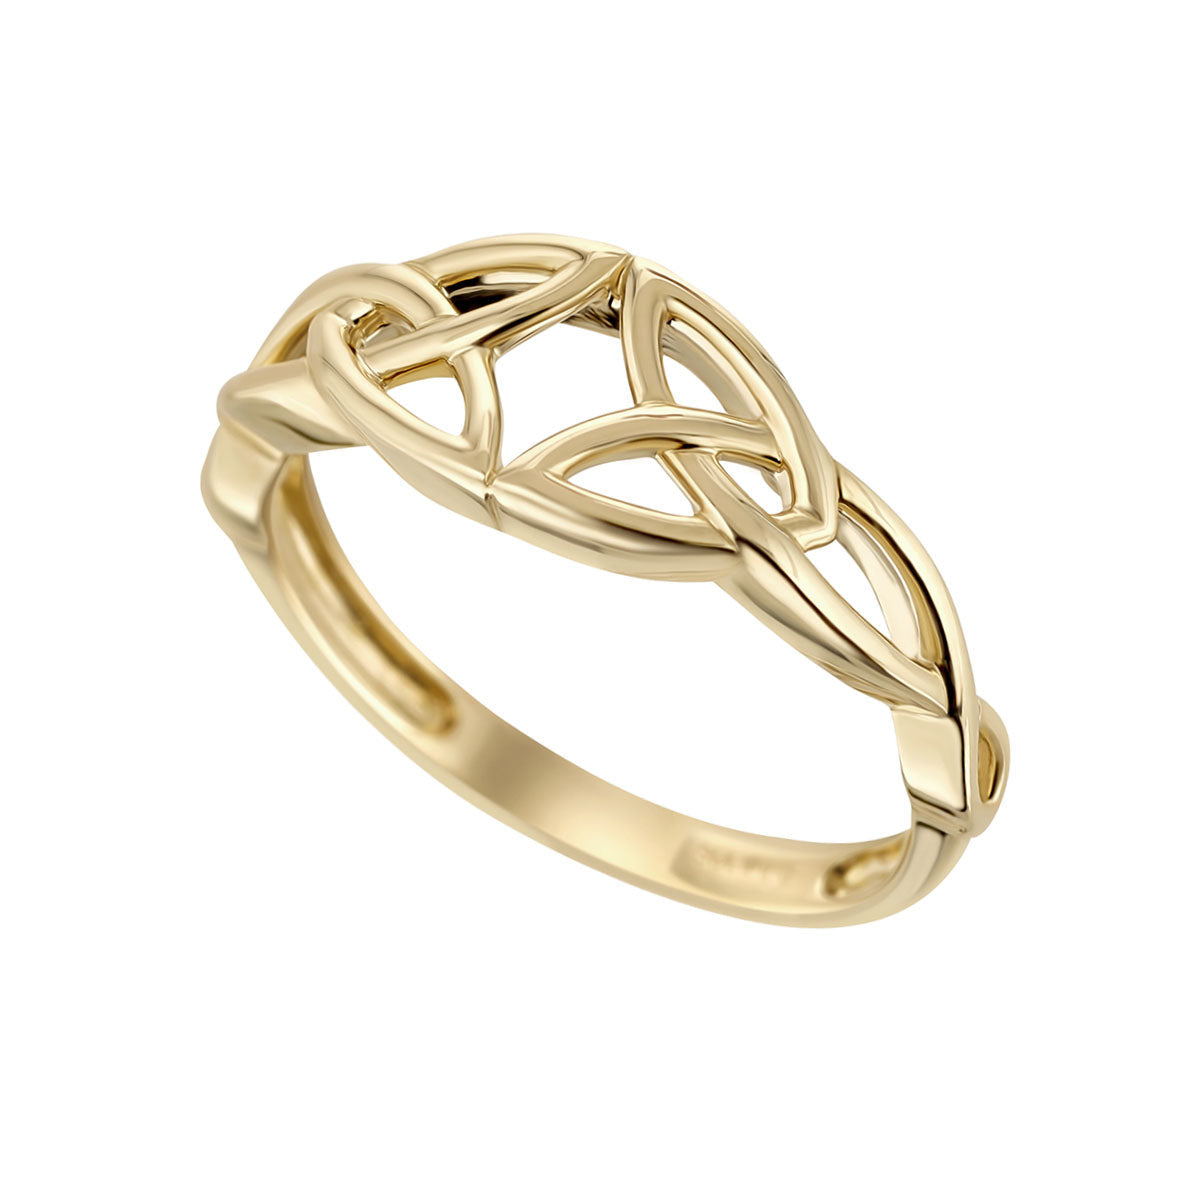 Stock image of Solvar 10k gold celtic knot ring s21149